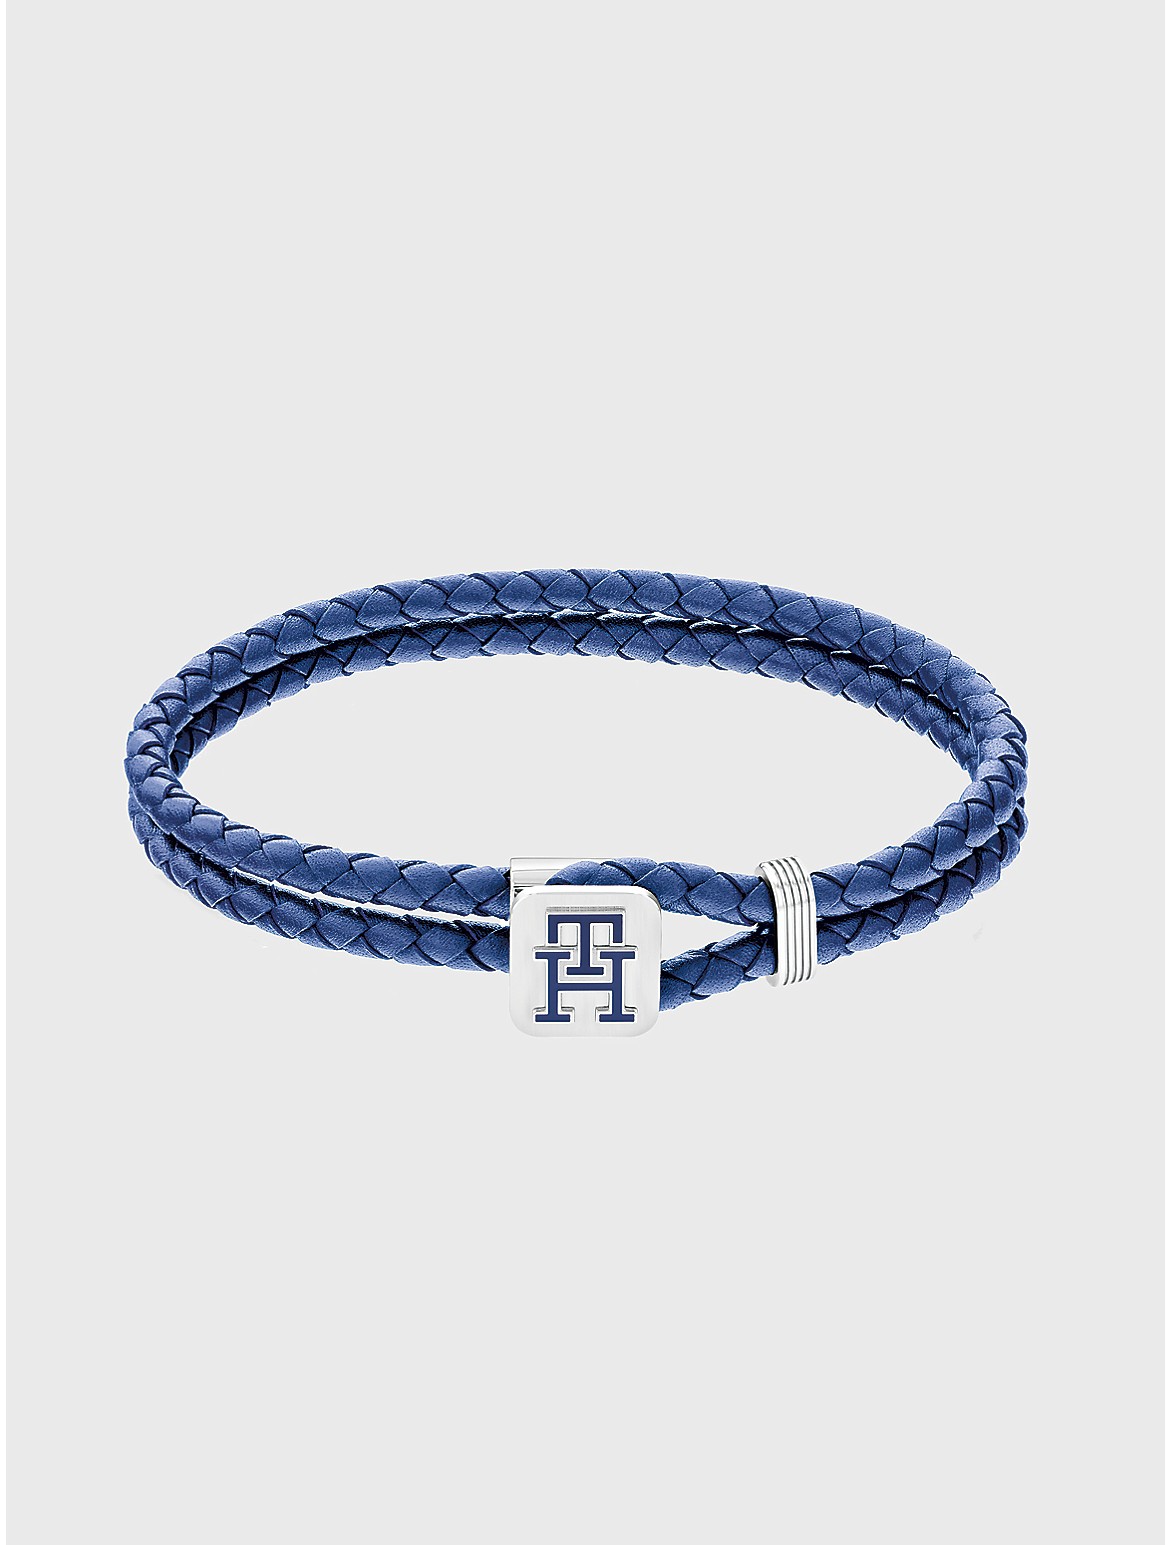 Tommy Hilfiger Men's TH Logo Blue Leather Bracelet - Blue